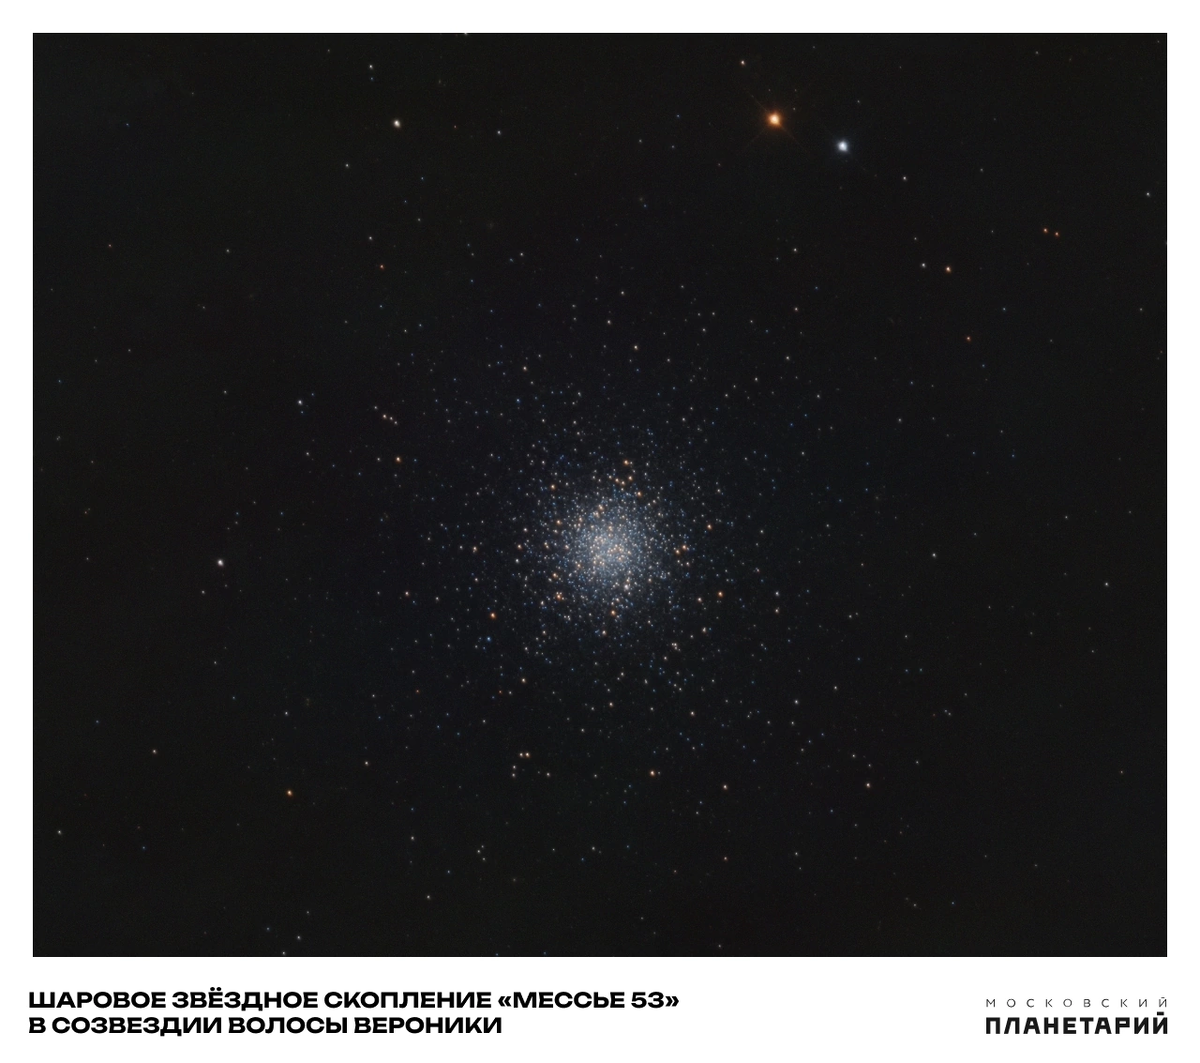  Спешим поделиться фотографией, сделанной астрономом, научным сотрудником Малой Обсерватории Московского Планетария Никитой Шаморгиным.